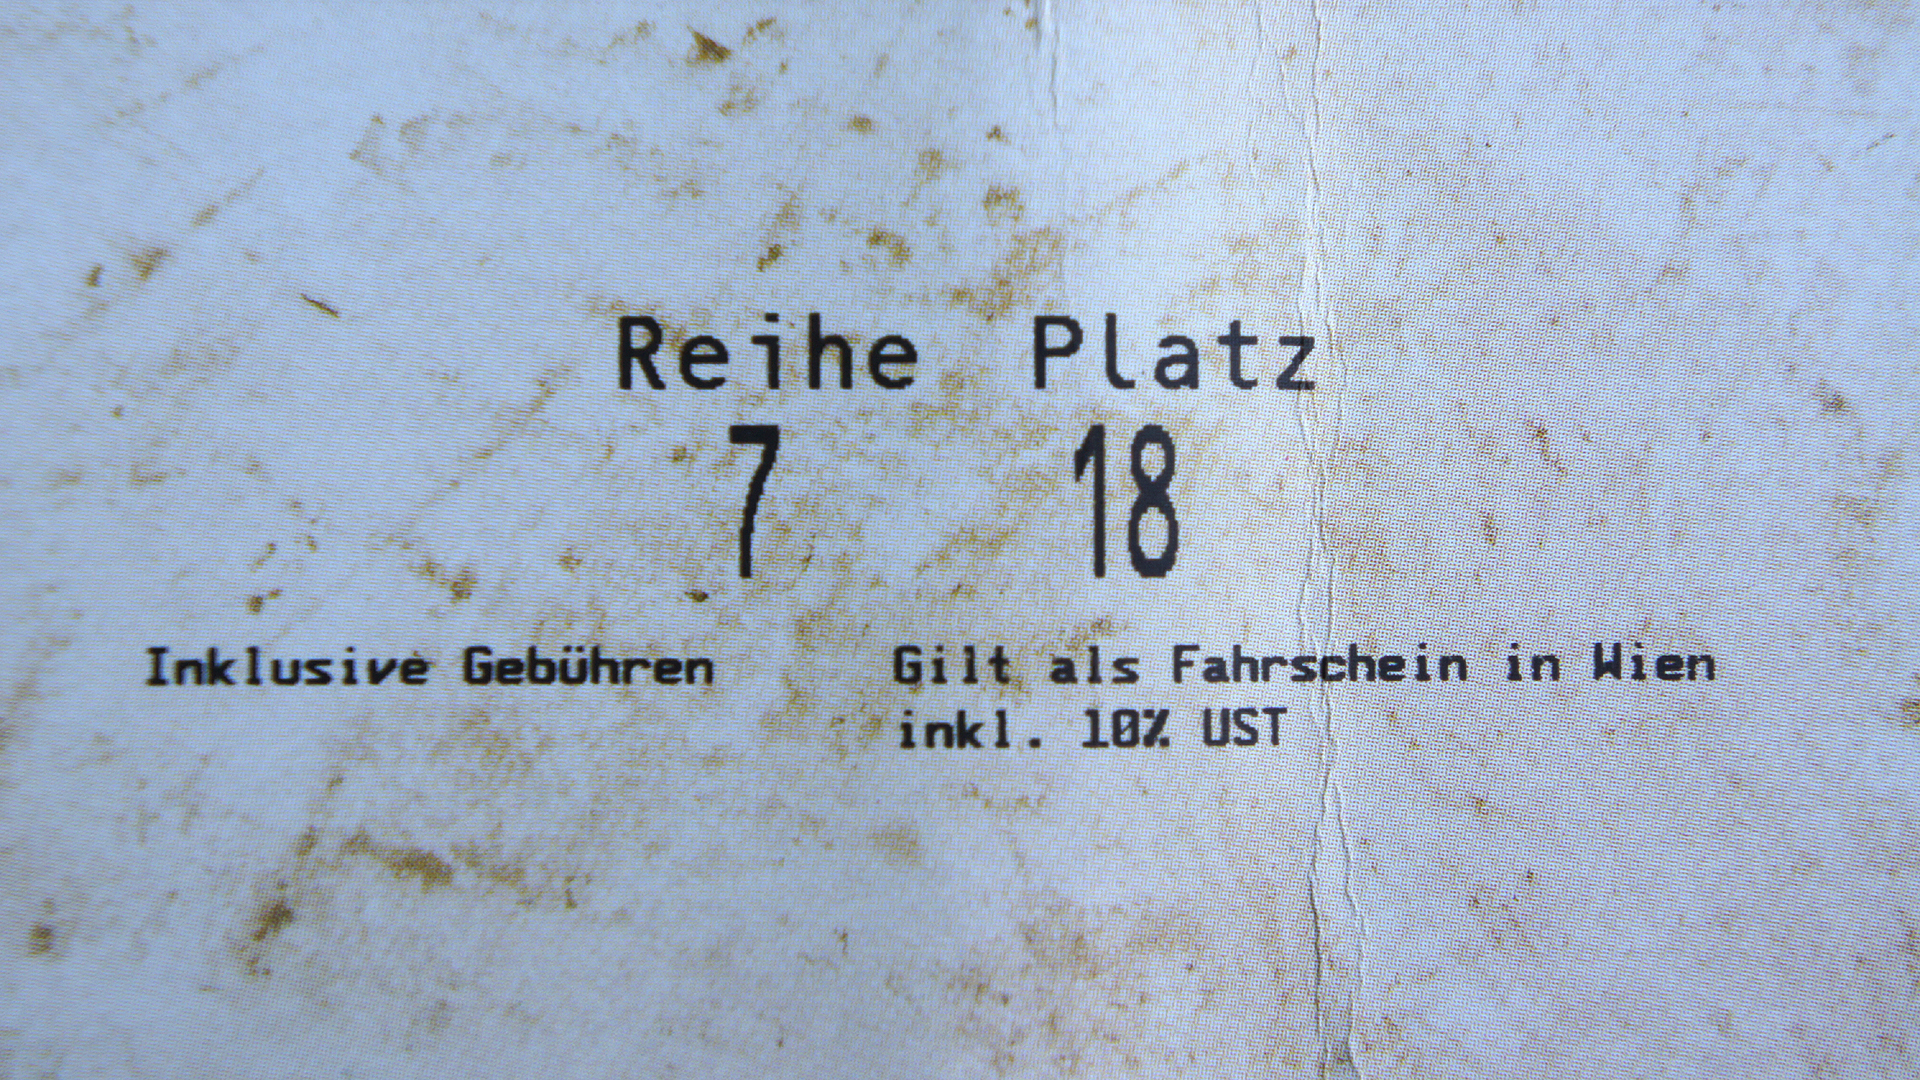 Wien: Eintrittskarte gilt als Fahrschein